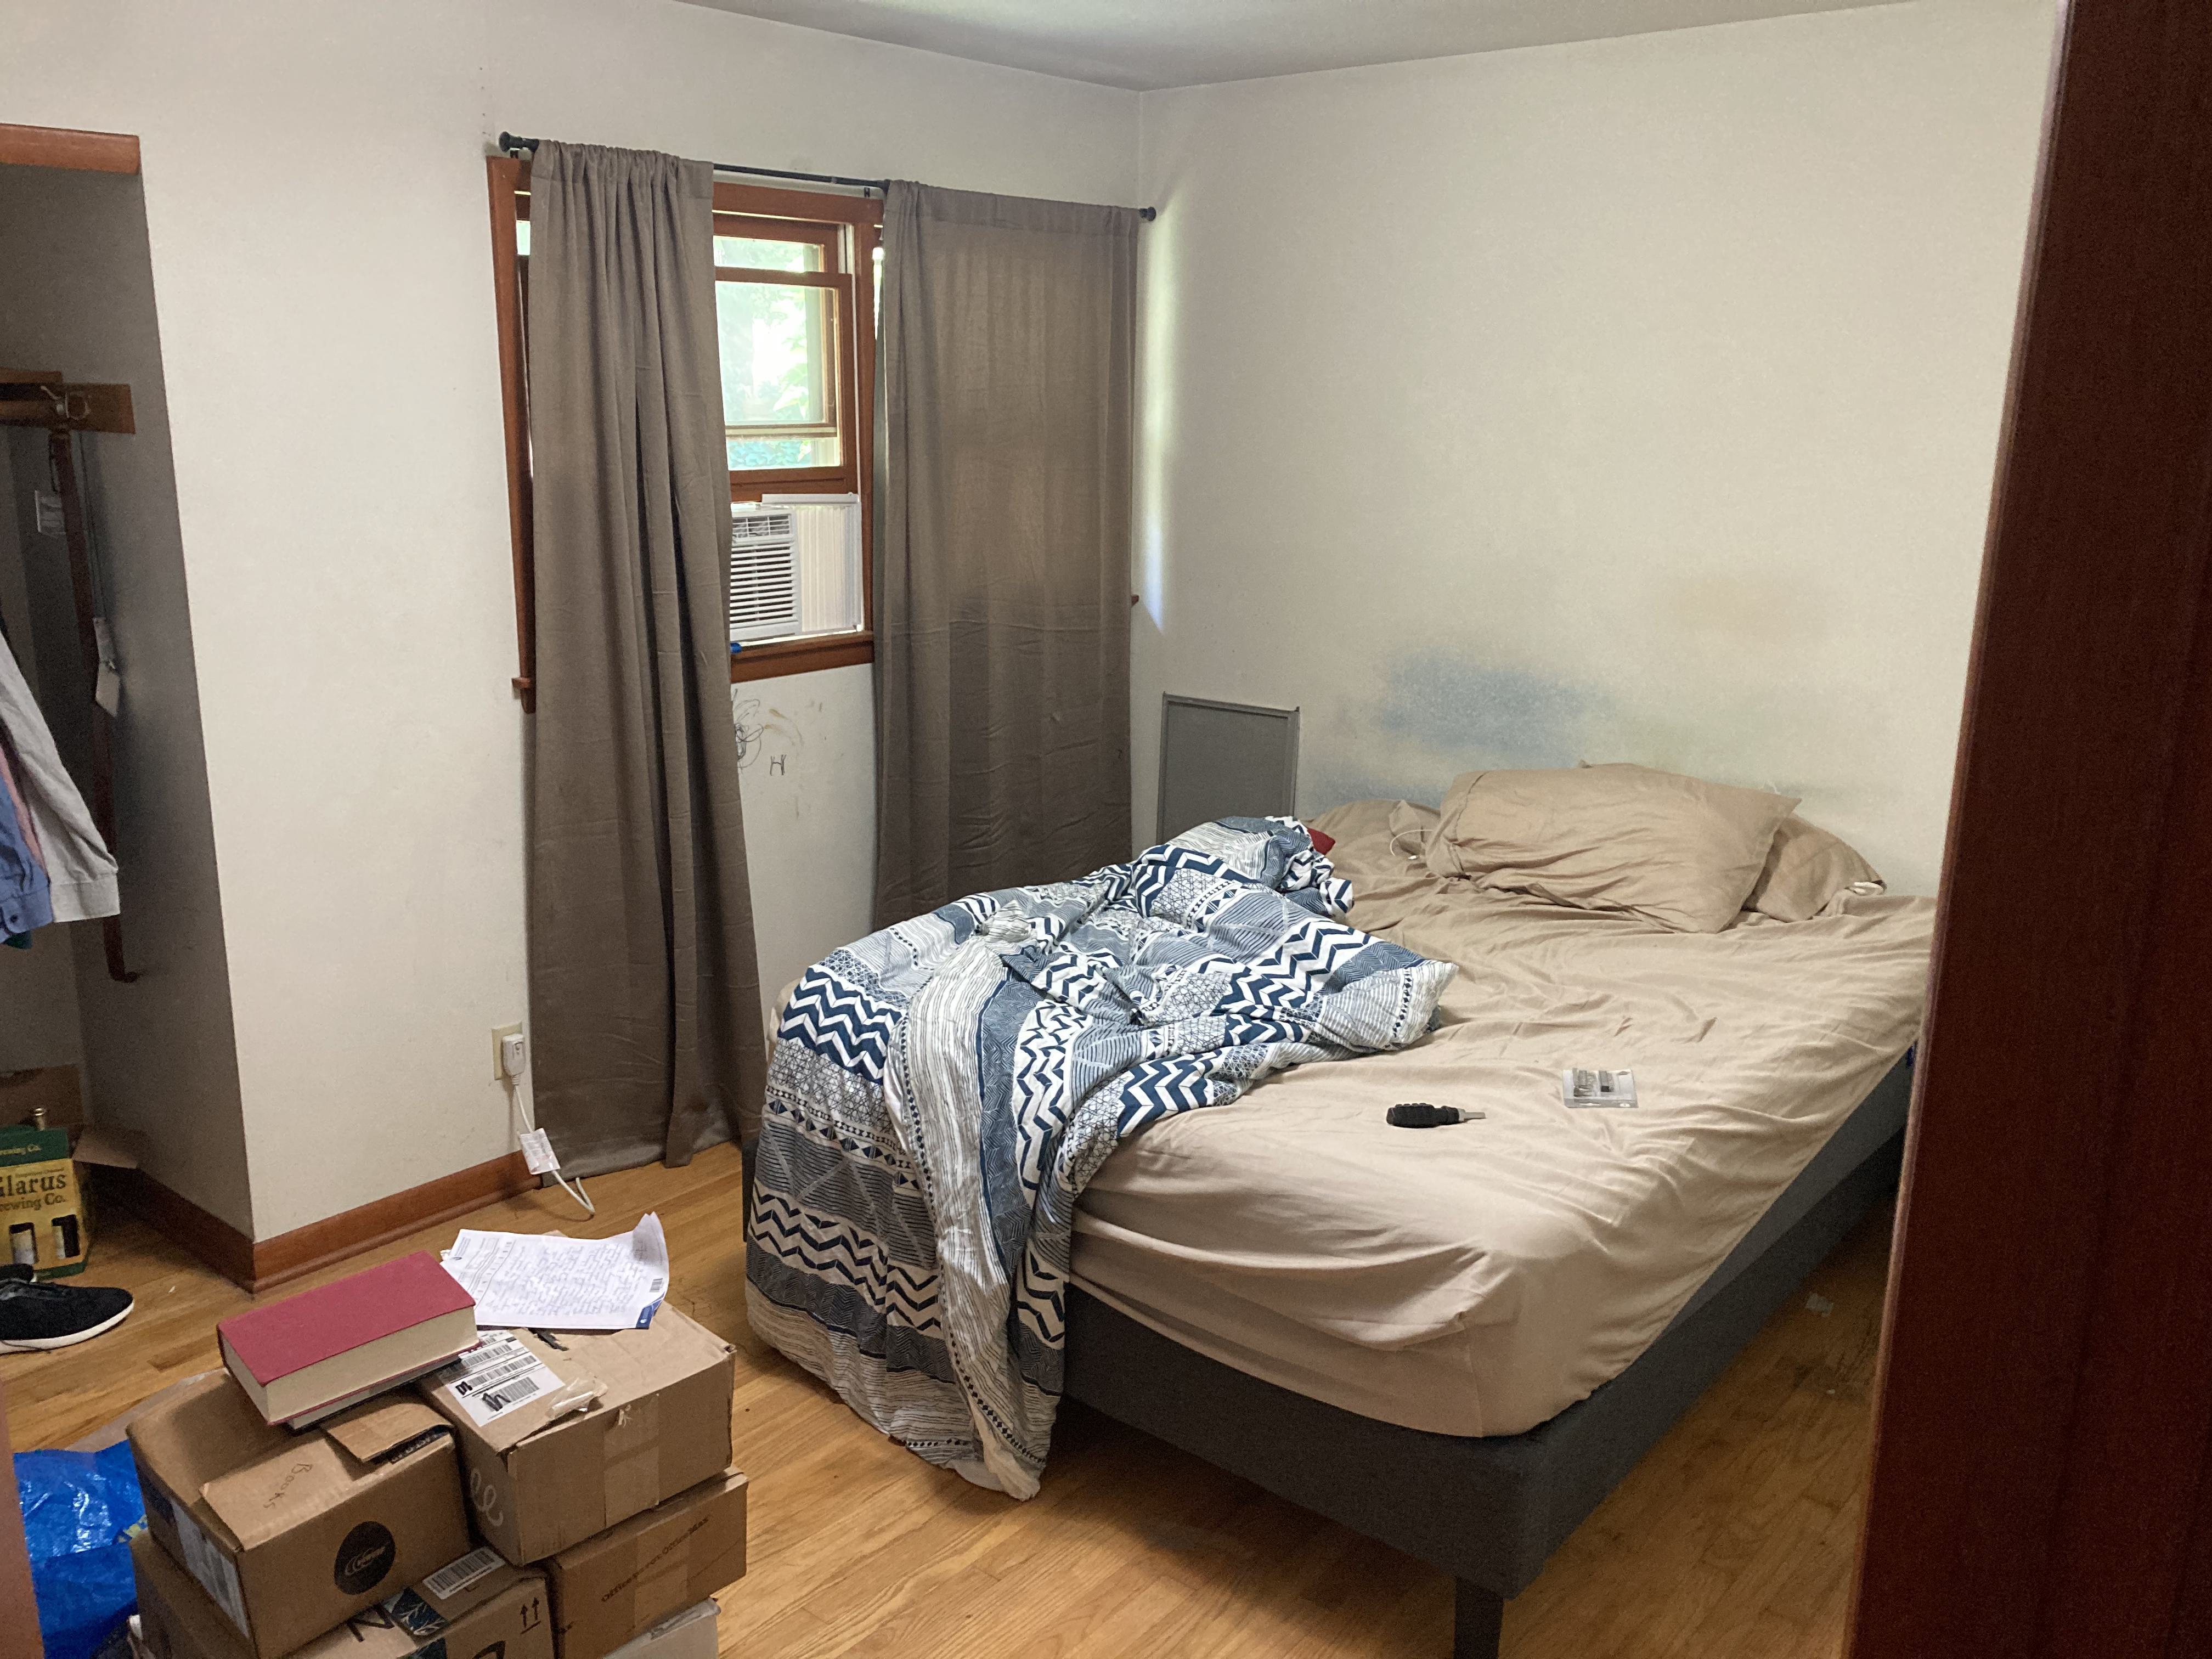 Z's room, pre move-in